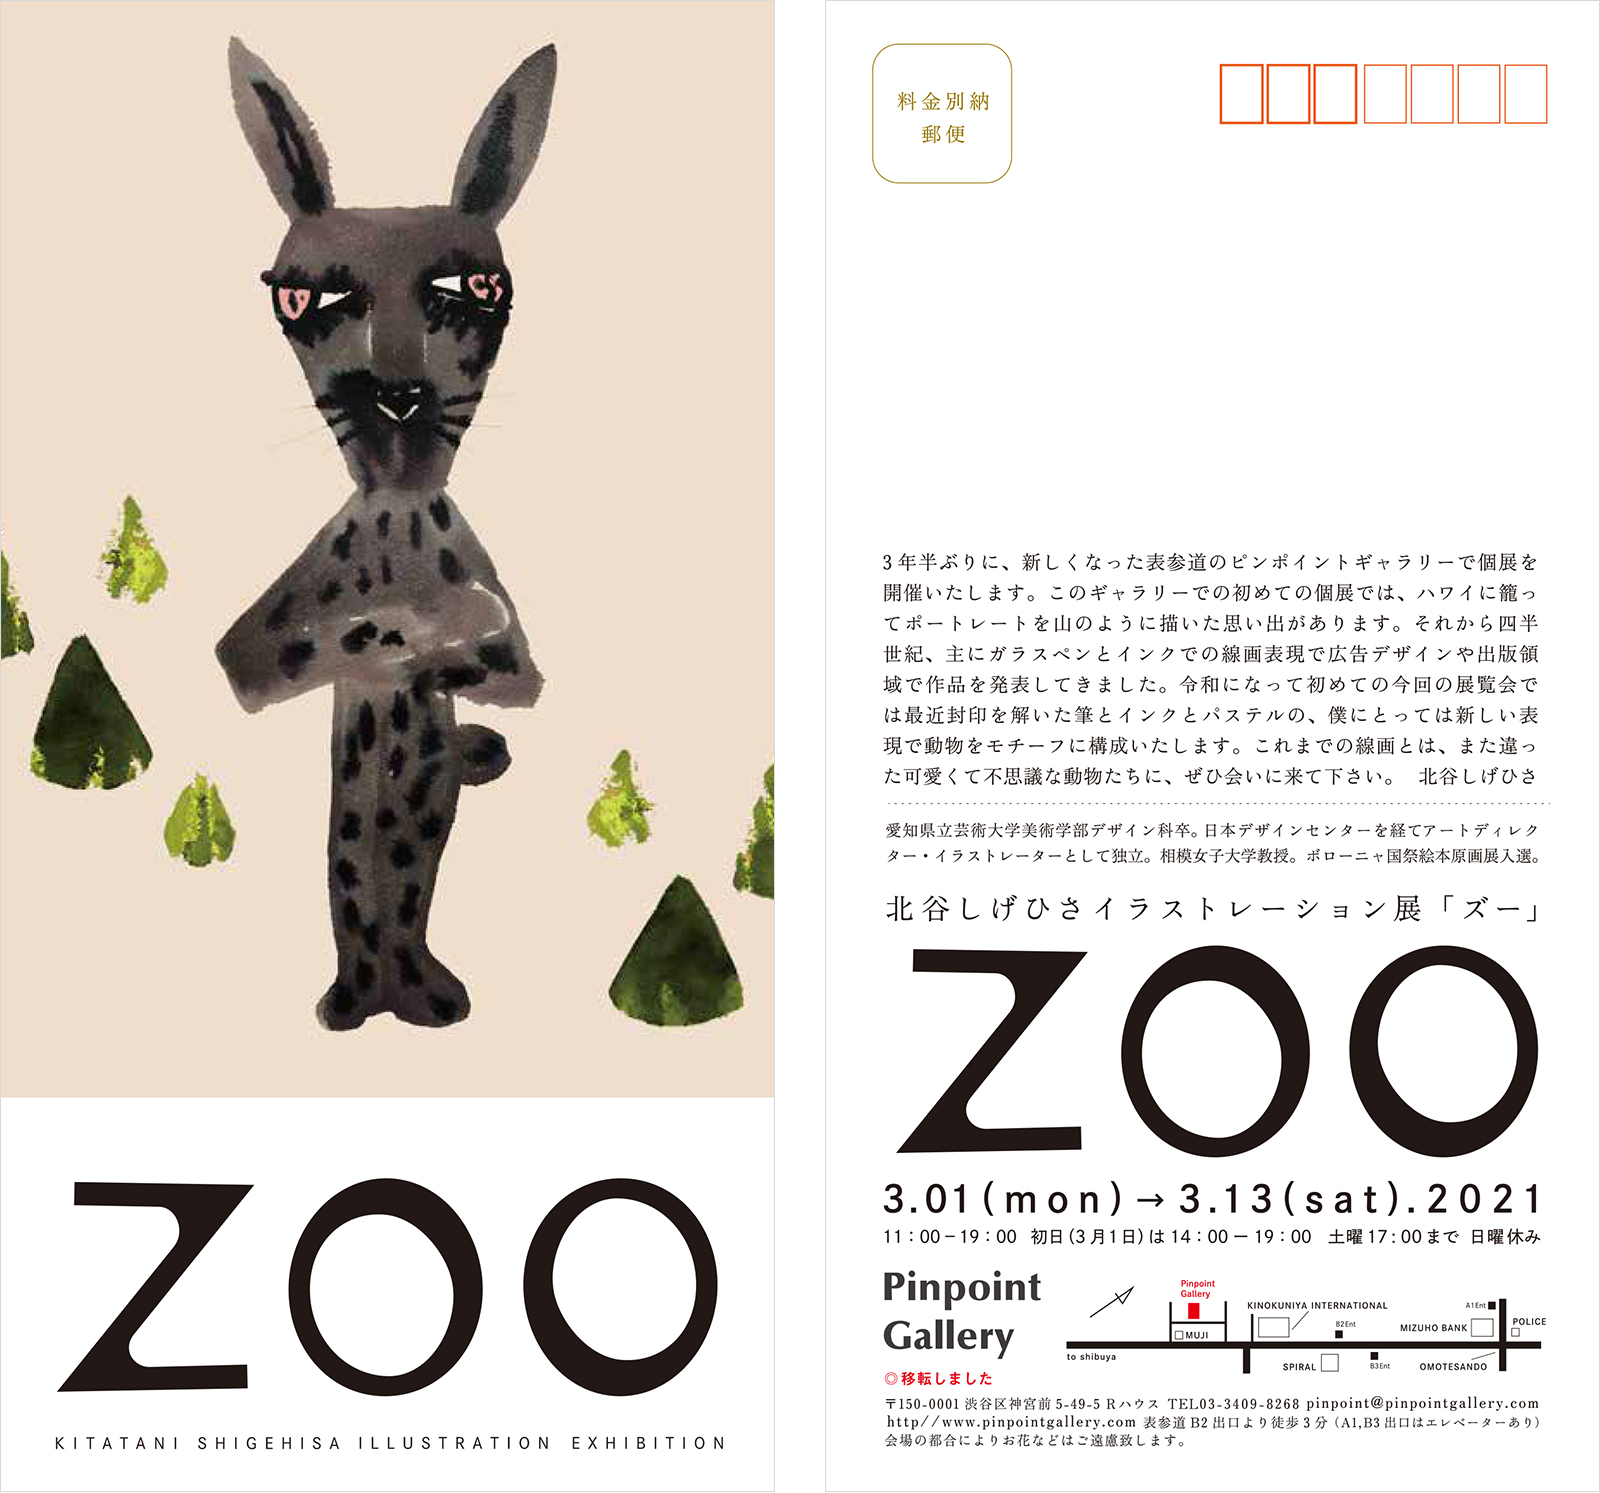 北谷しげひさイラストレーション展「ZOO」